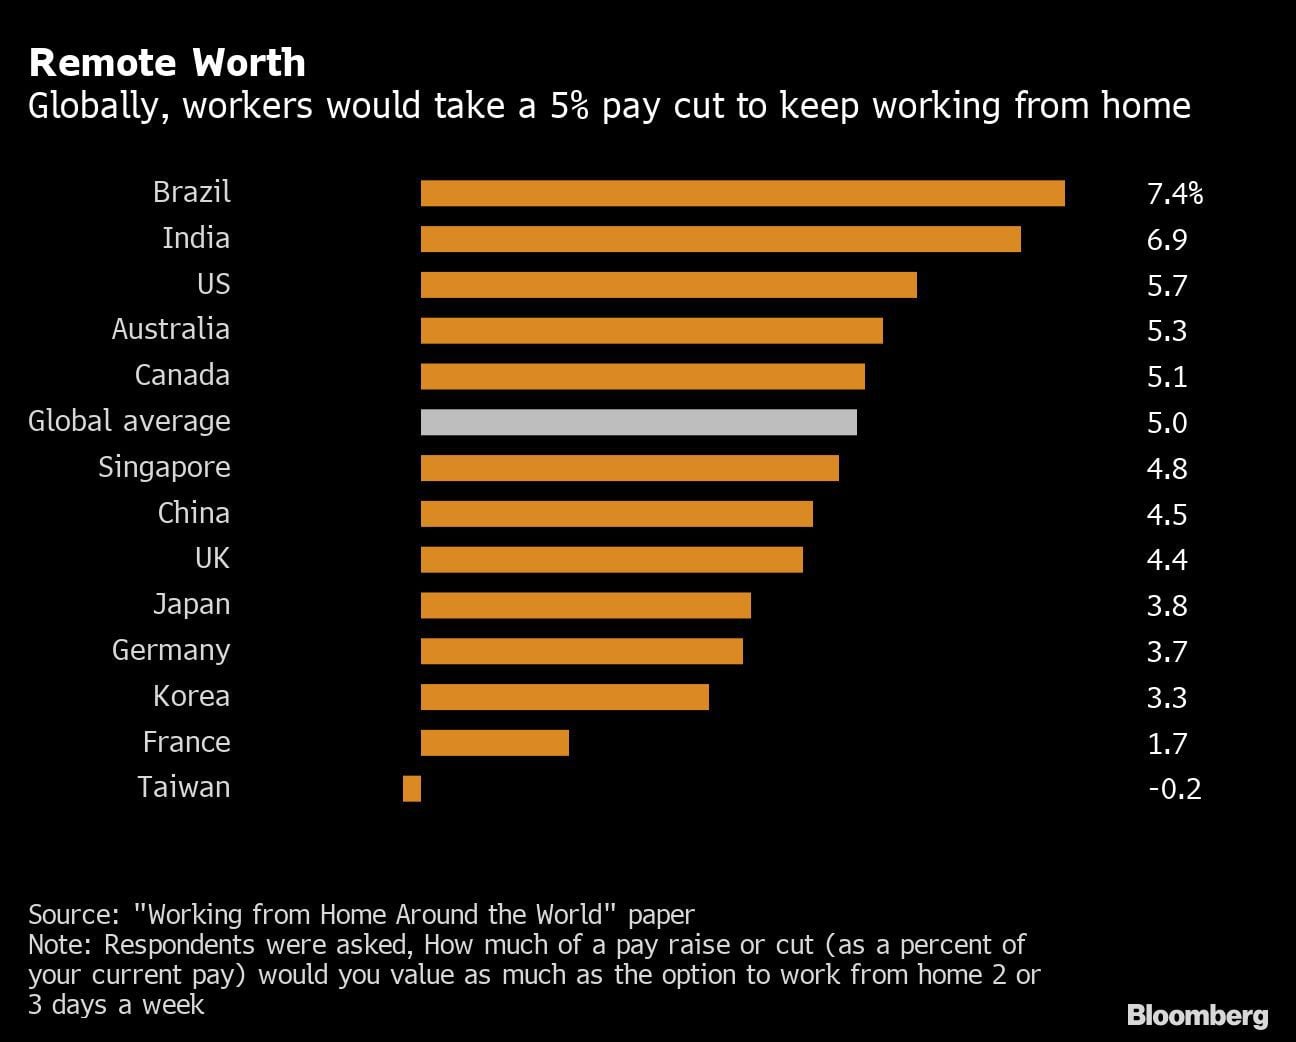 Trabajadores de distintos países que prefieren un recorte salarial del 5 por ciento para mantener su trabajo a distancia. (Bloomberg)